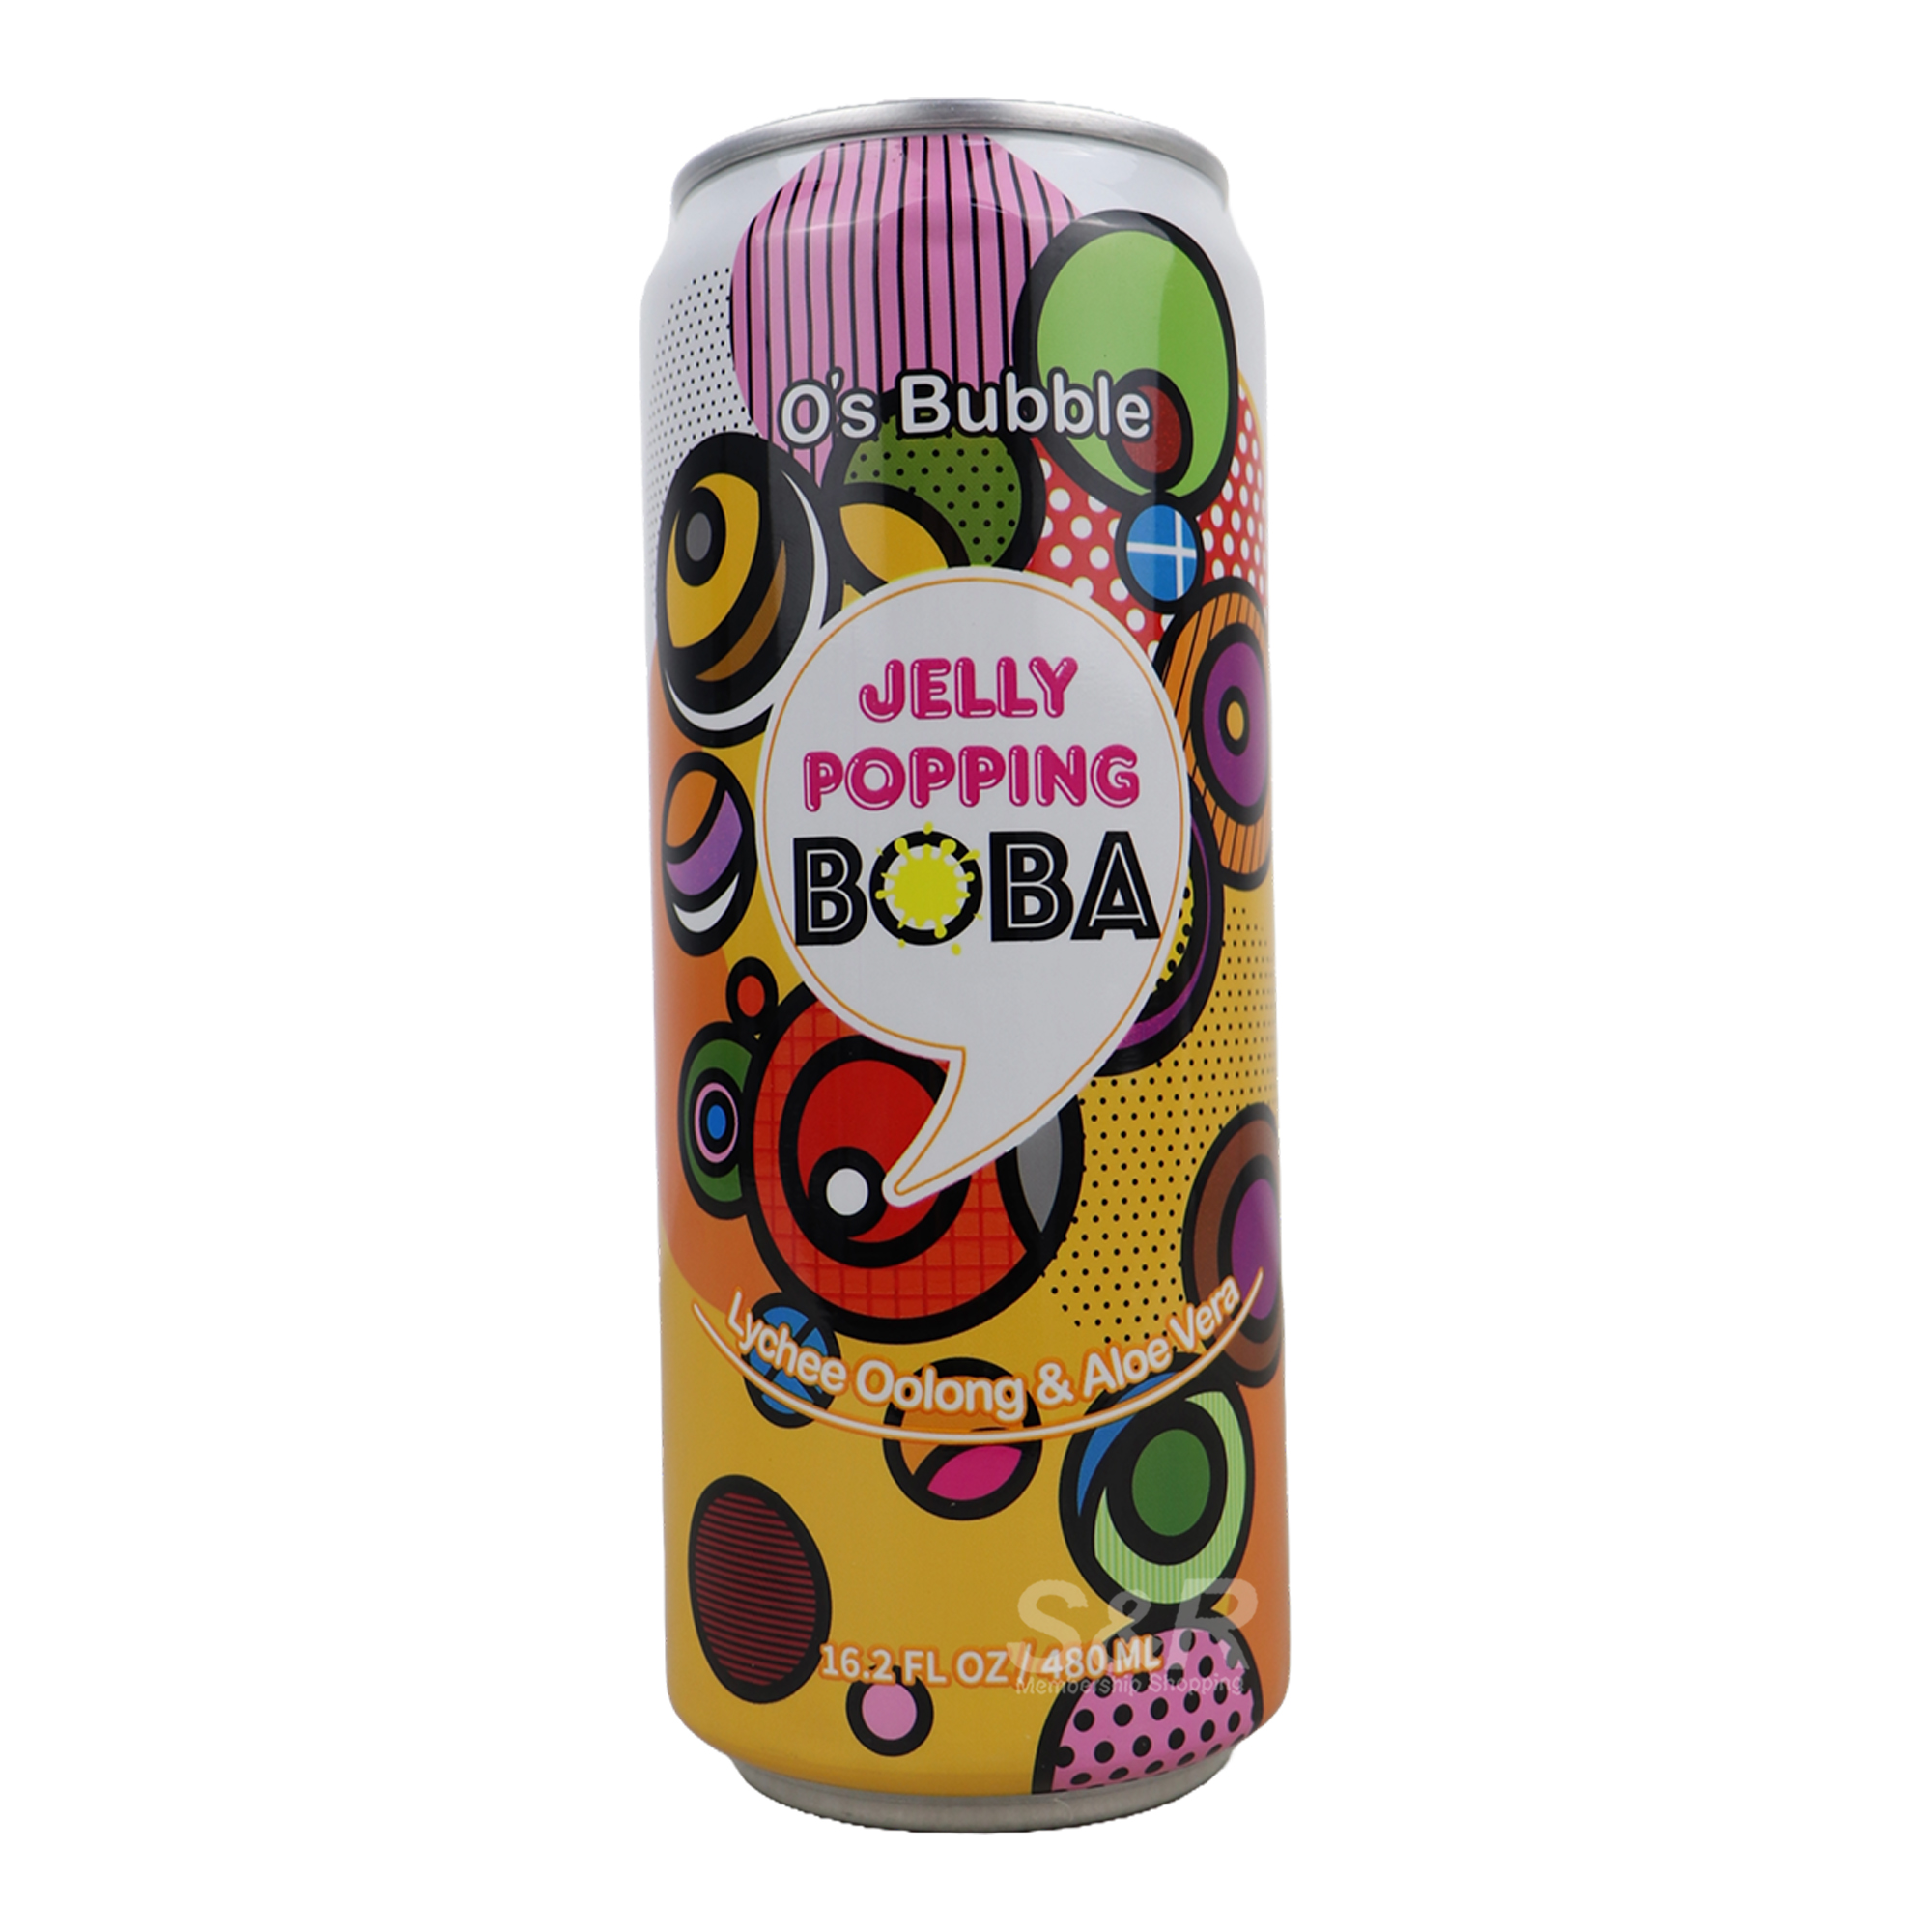 O's Bubble Jelly Popping Lychee Oolong & Aloe Vera Tea 480mL